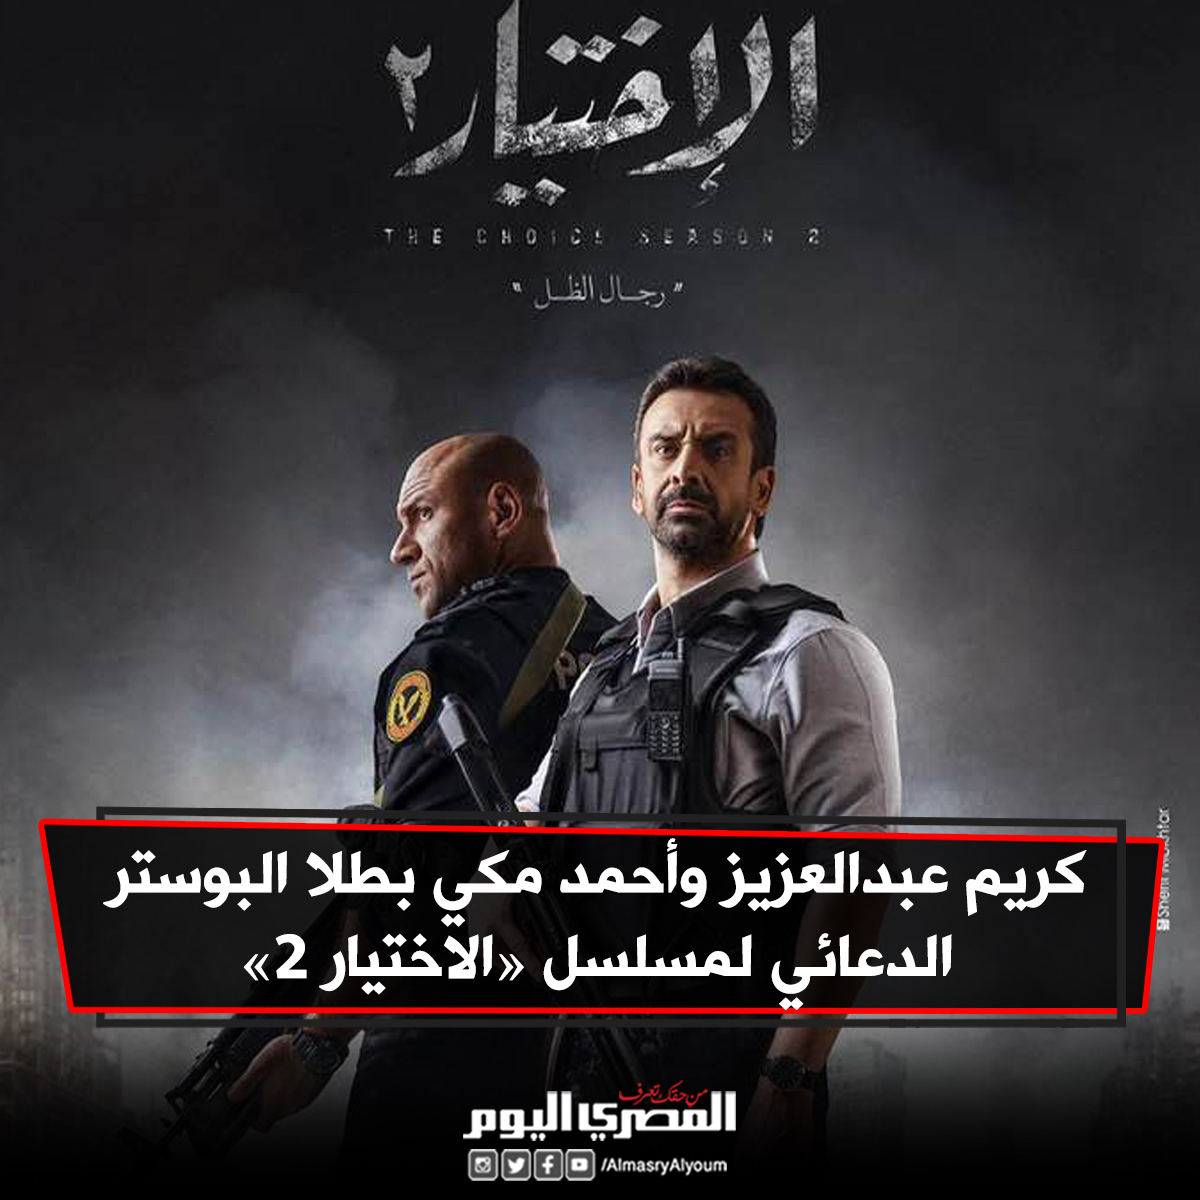 كريم عبدالعزيز و أحمد مكي بطلا البوستر الدعائي لمسلسل « الاختيار 2»